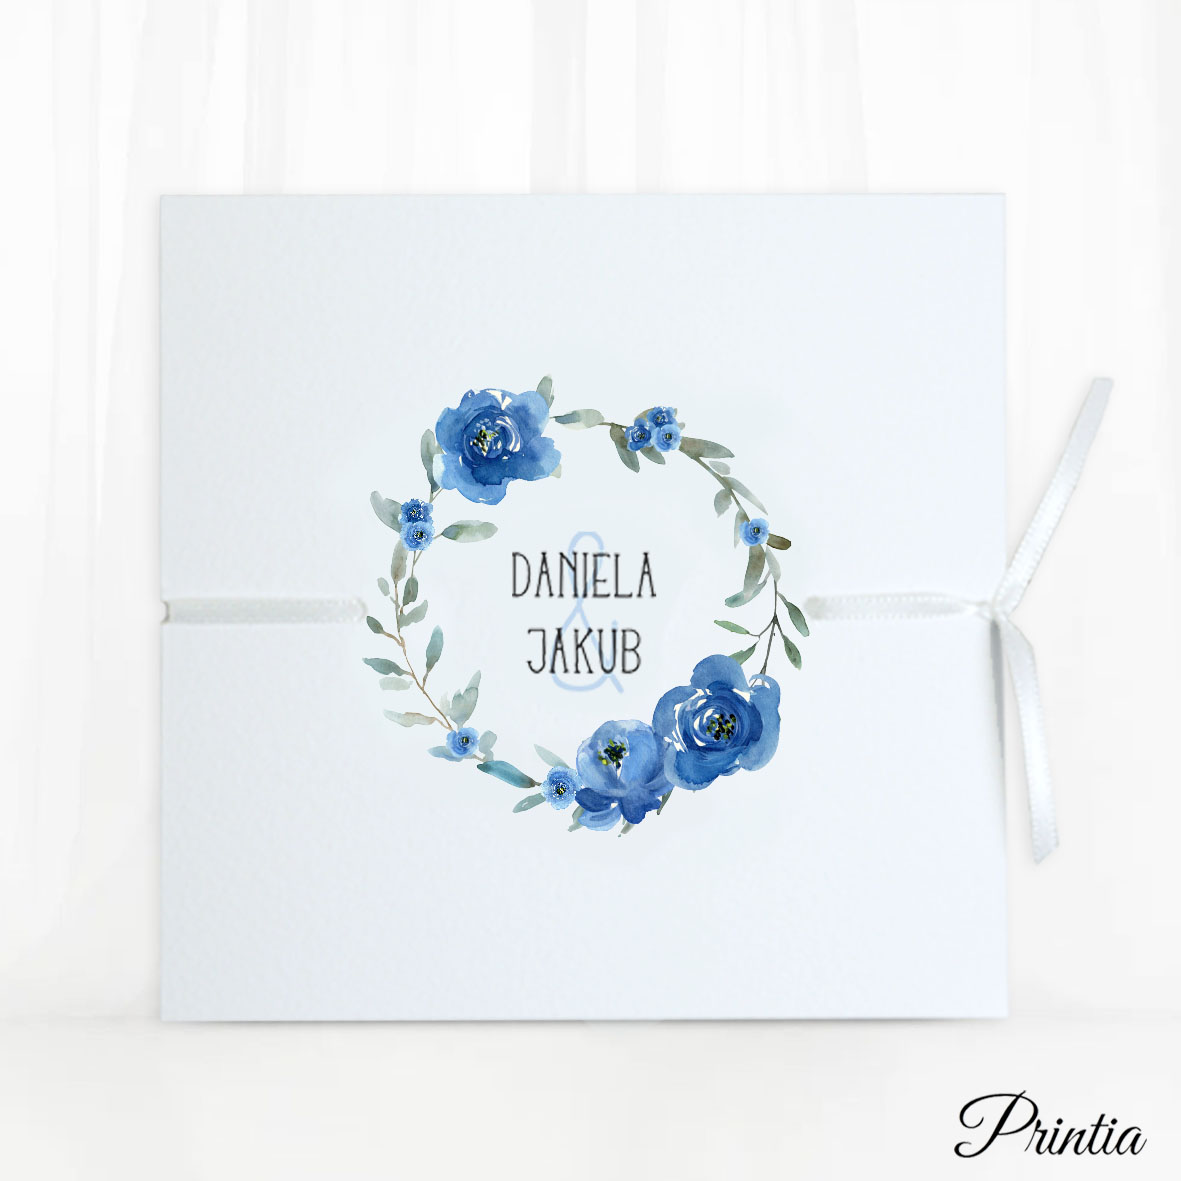 Otevírací svatební oznámení s modrým květinovým kruhem a stuhou